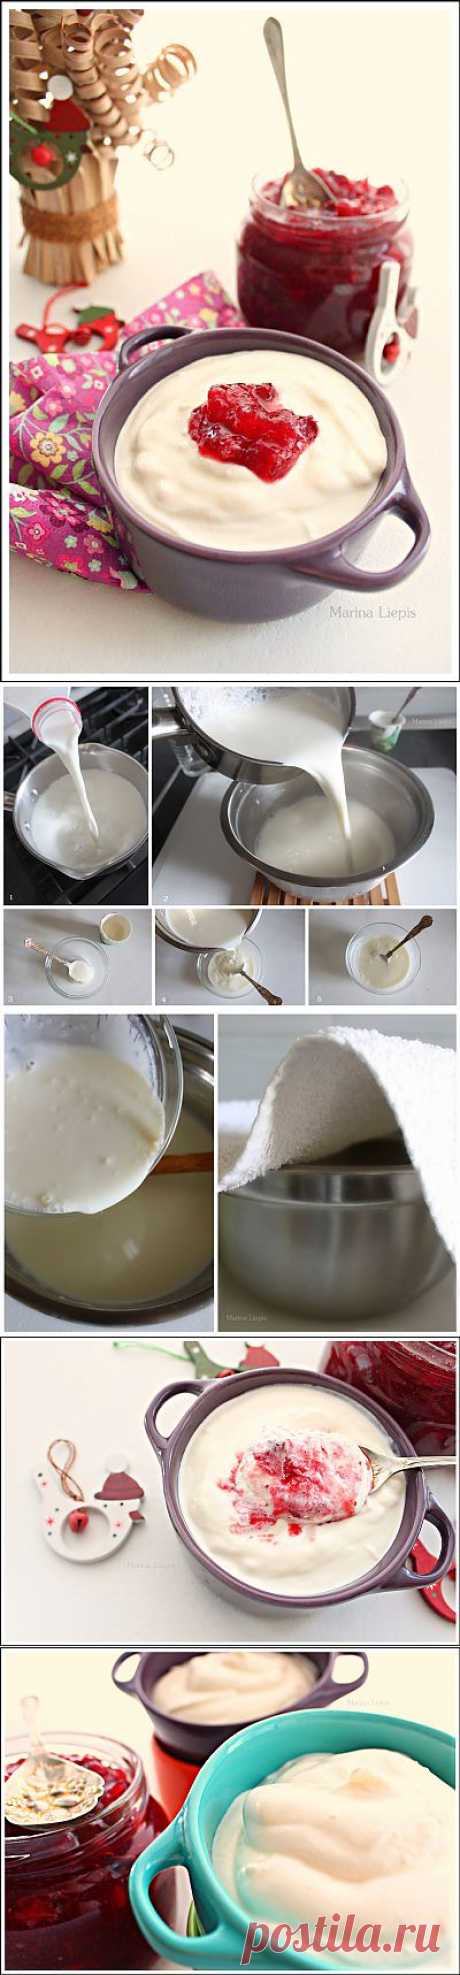 Рецепт домашнего йогурта - Простые рецепты Овкусе.ру